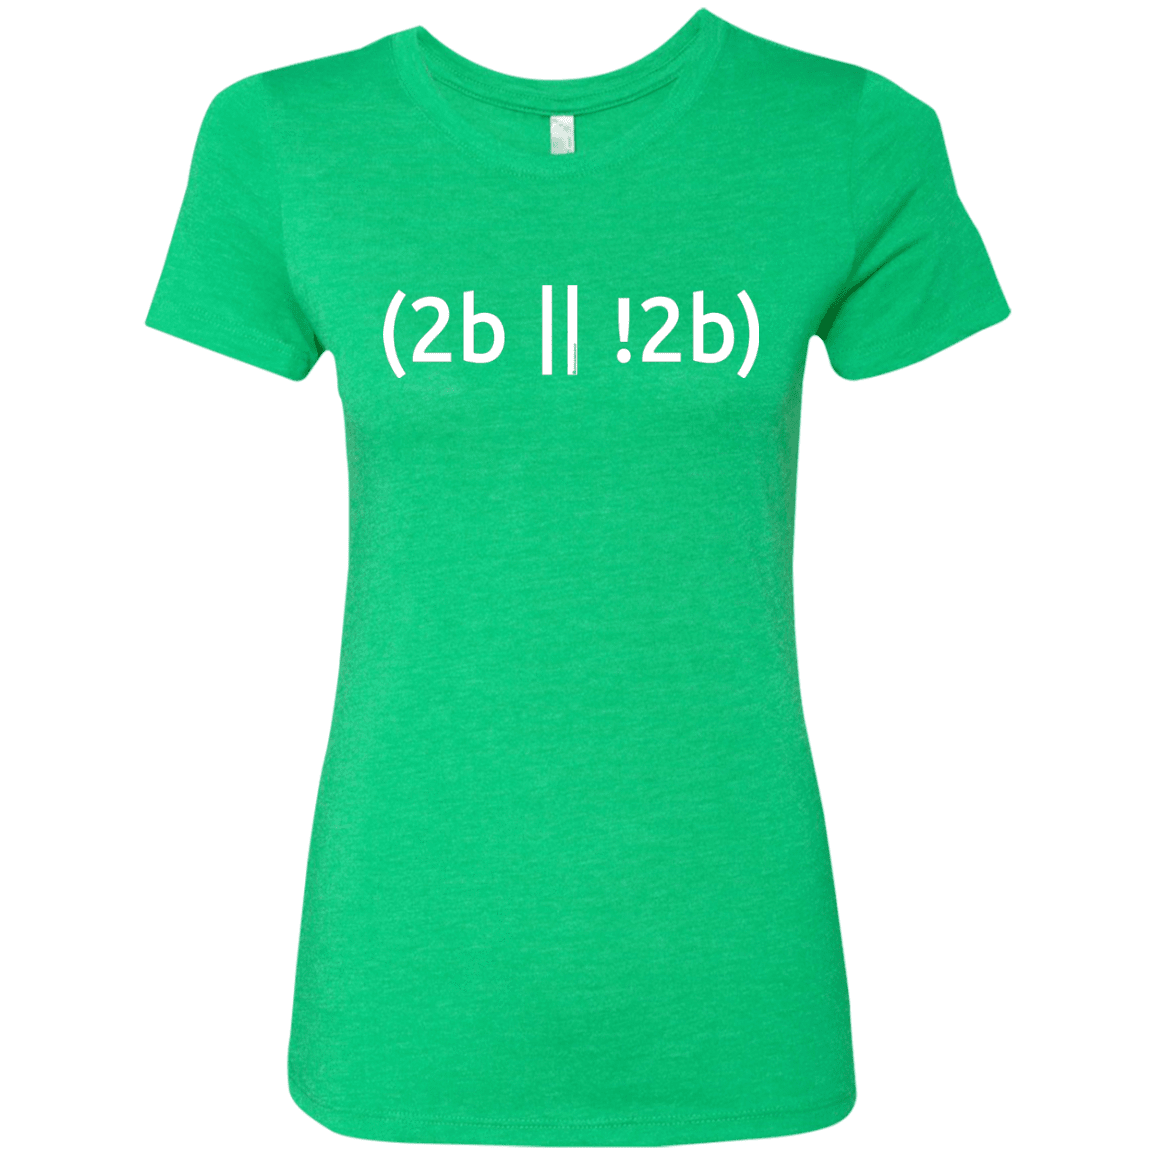 T-Shirts Envy / Small 2b Or Not 2b Women's Triblend T-Shirt